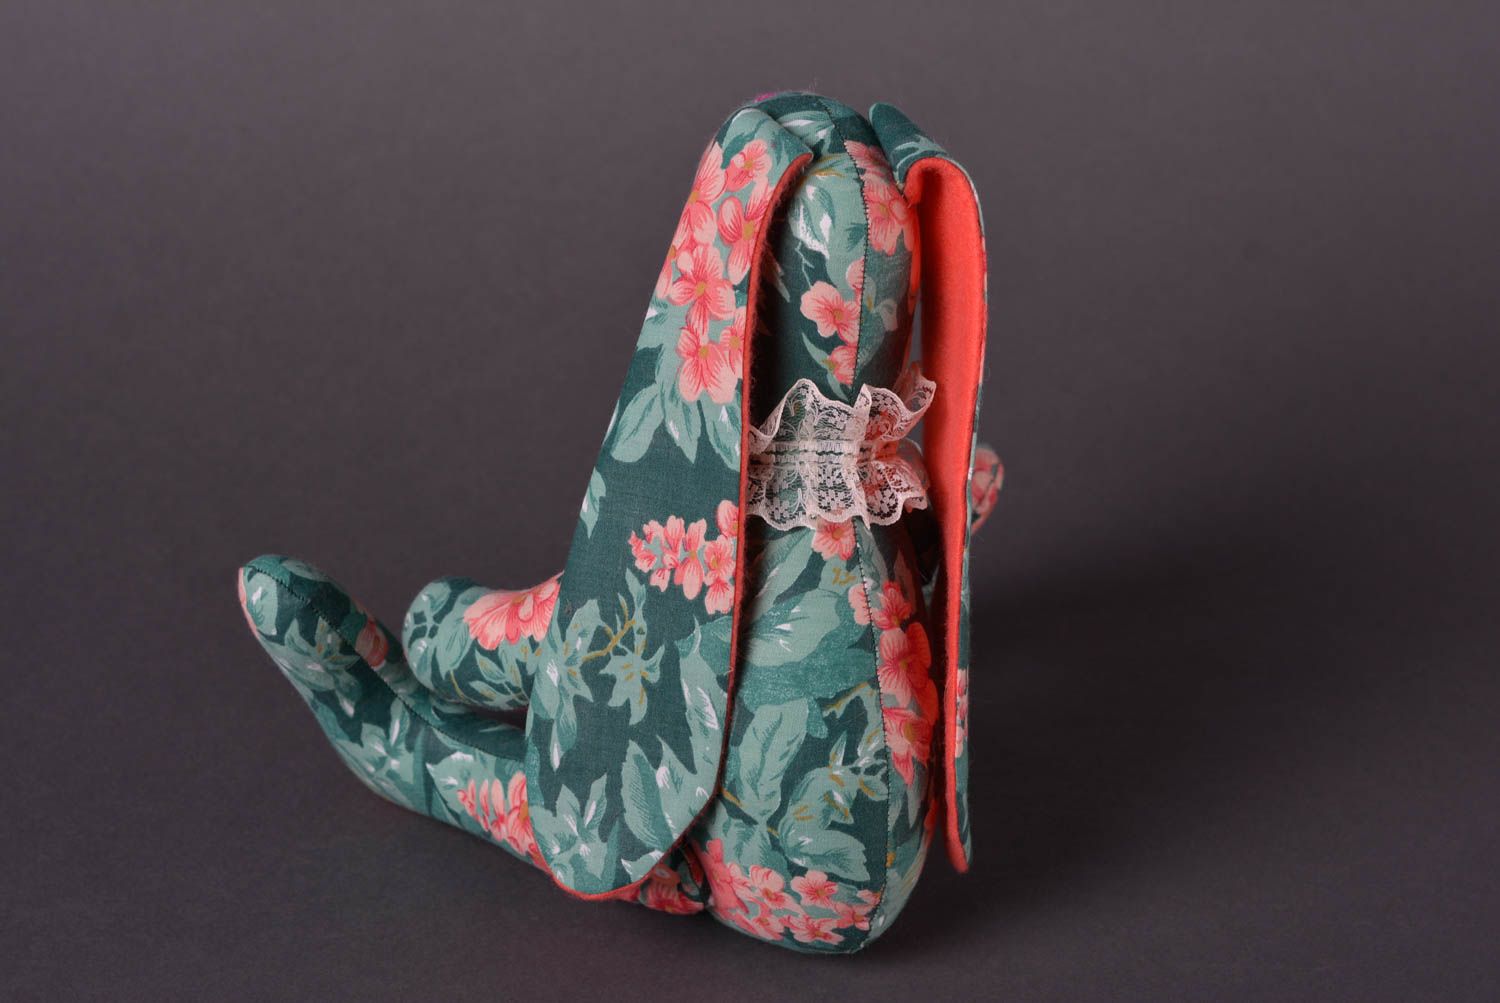 Авторская игрушка ручной работы игрушка заяц из ткани стильный подарок фото 3